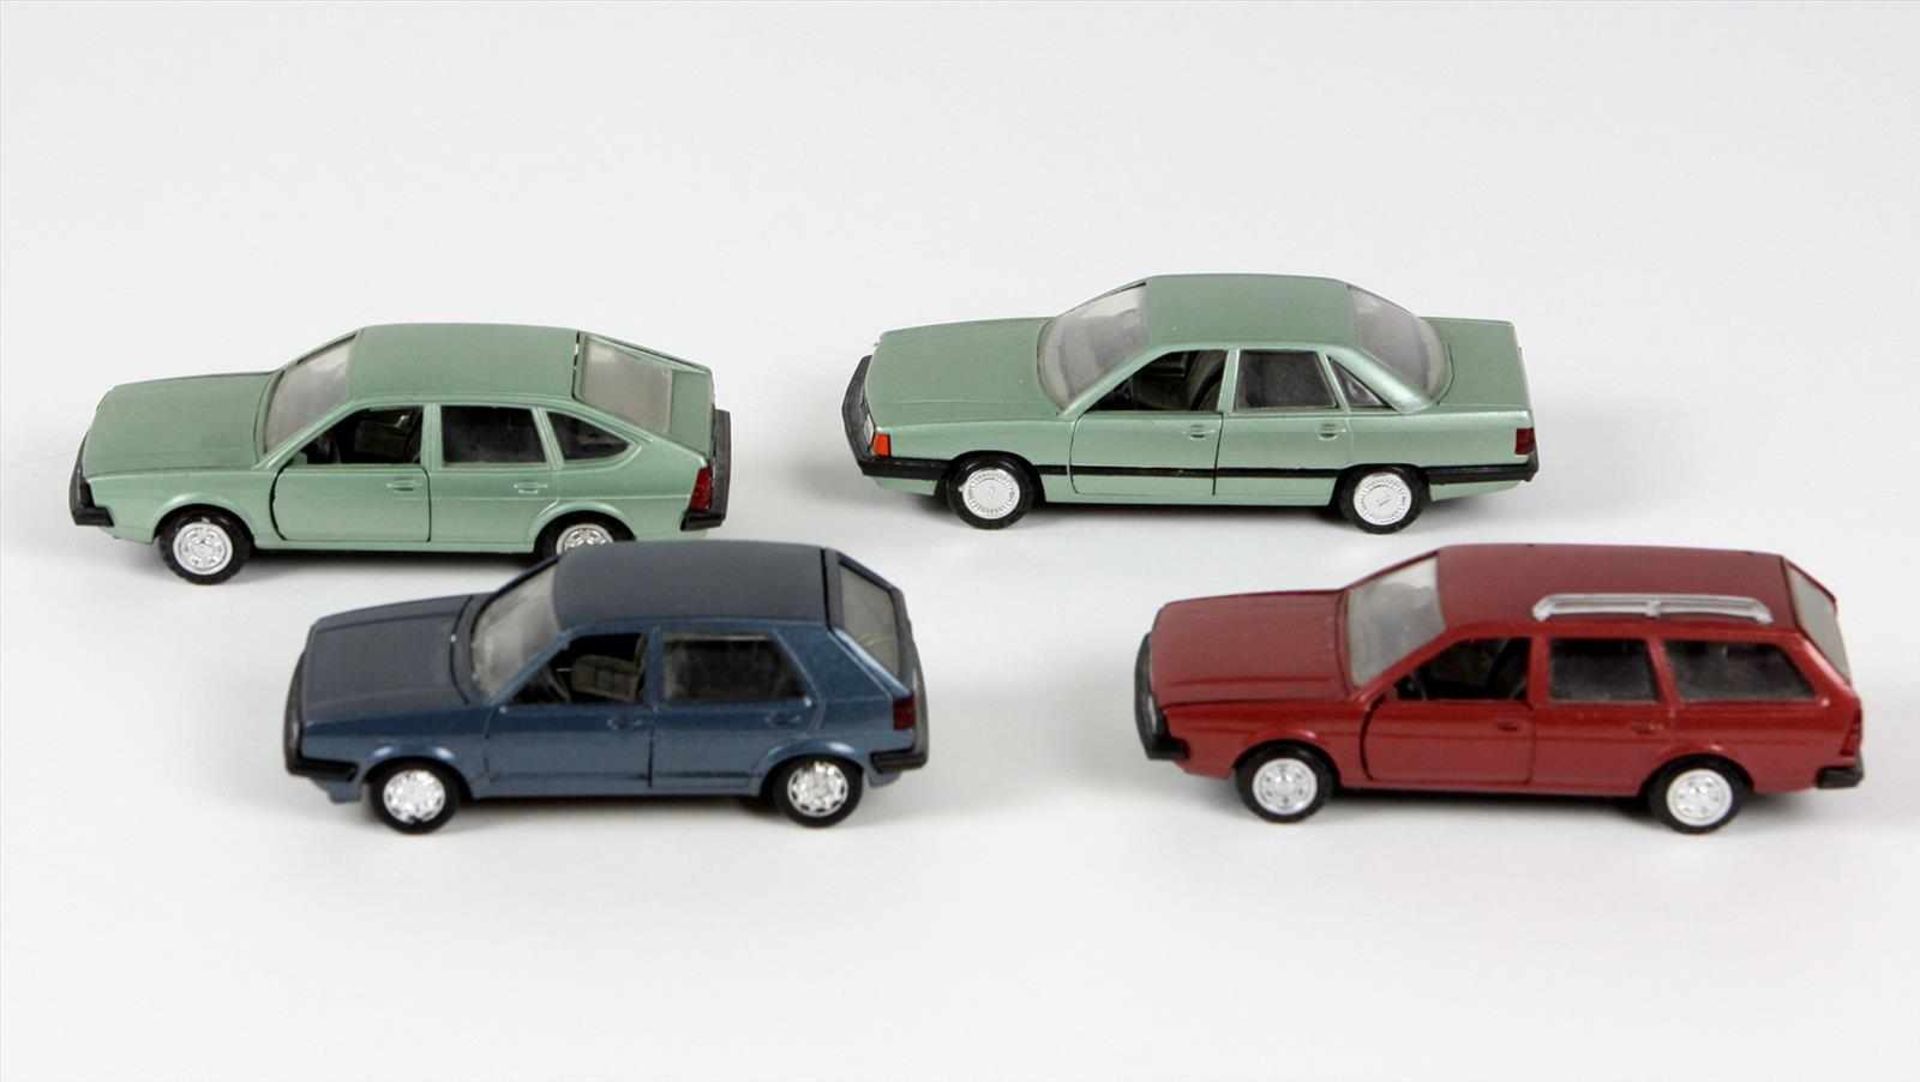 4 Modellautos Conrad u.a. 3 Modellautos gemarkt Conrad, dabei Nr 1010 - VW Passat GLS, Nr. 1011 - VW